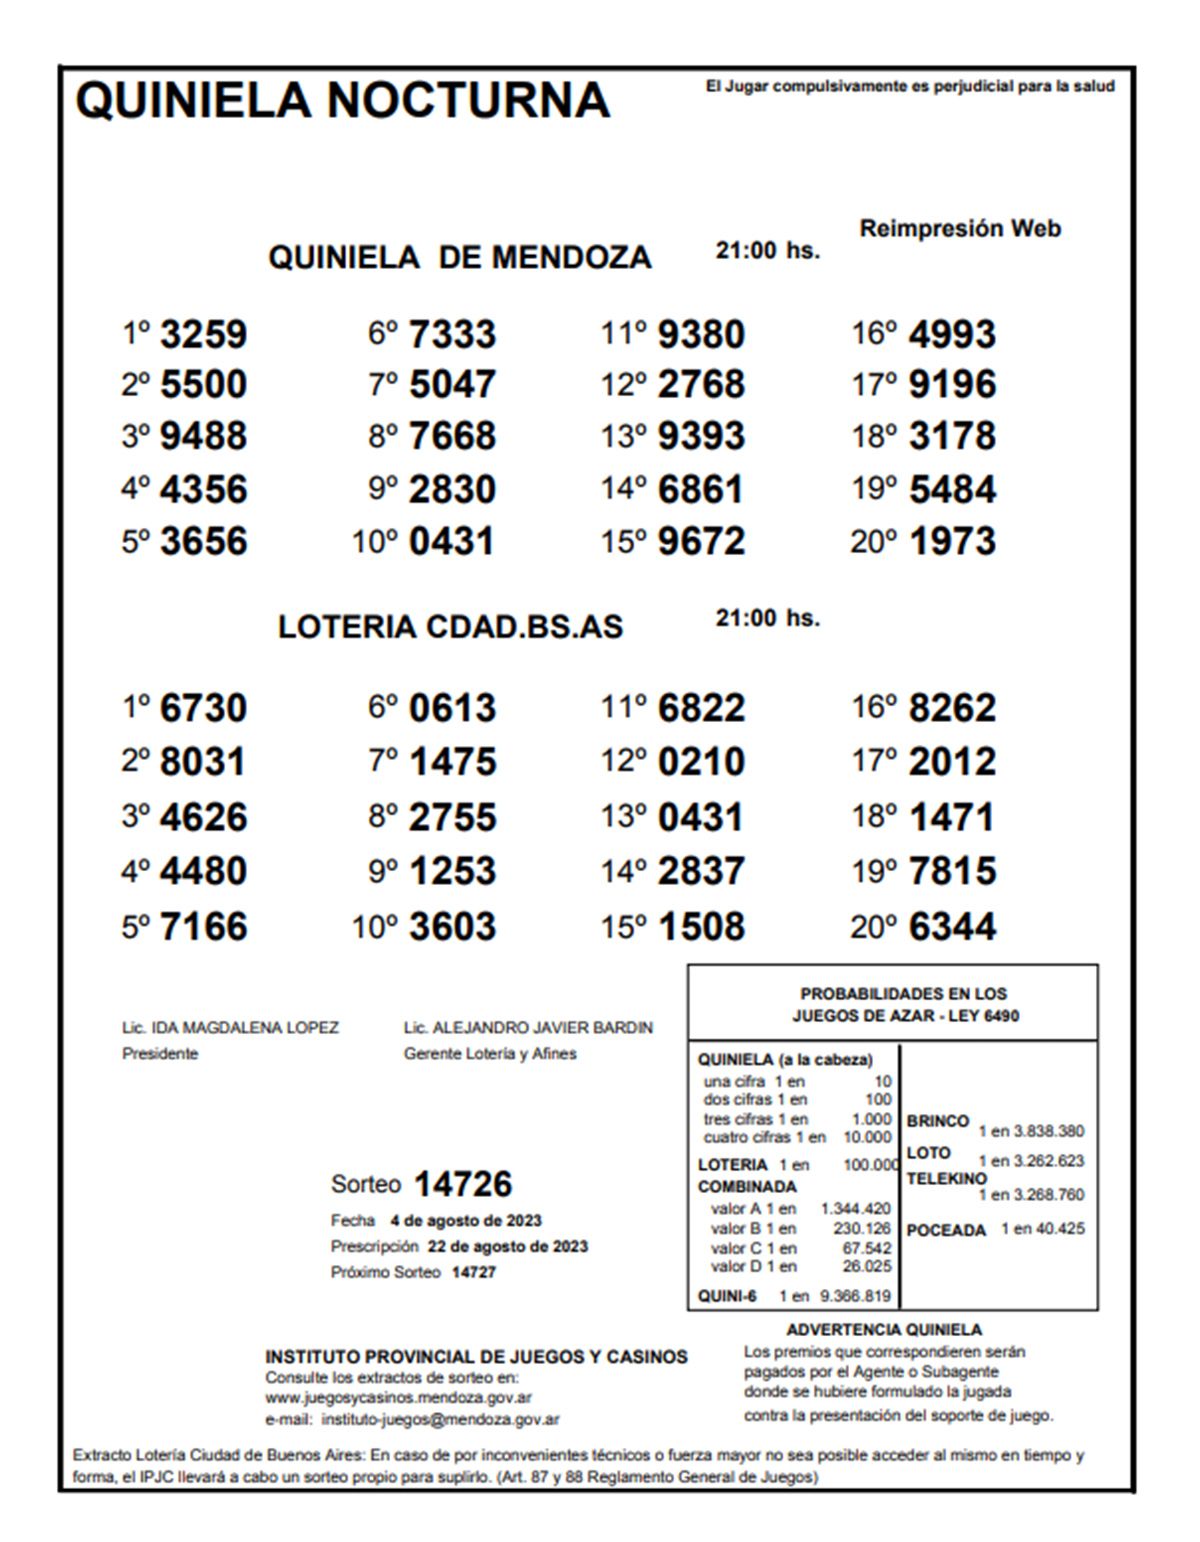 4 De Agosto 2023 Quiniela de Mendoza: resultados de la Nocturna de hoy, 4 de agosto de 2023